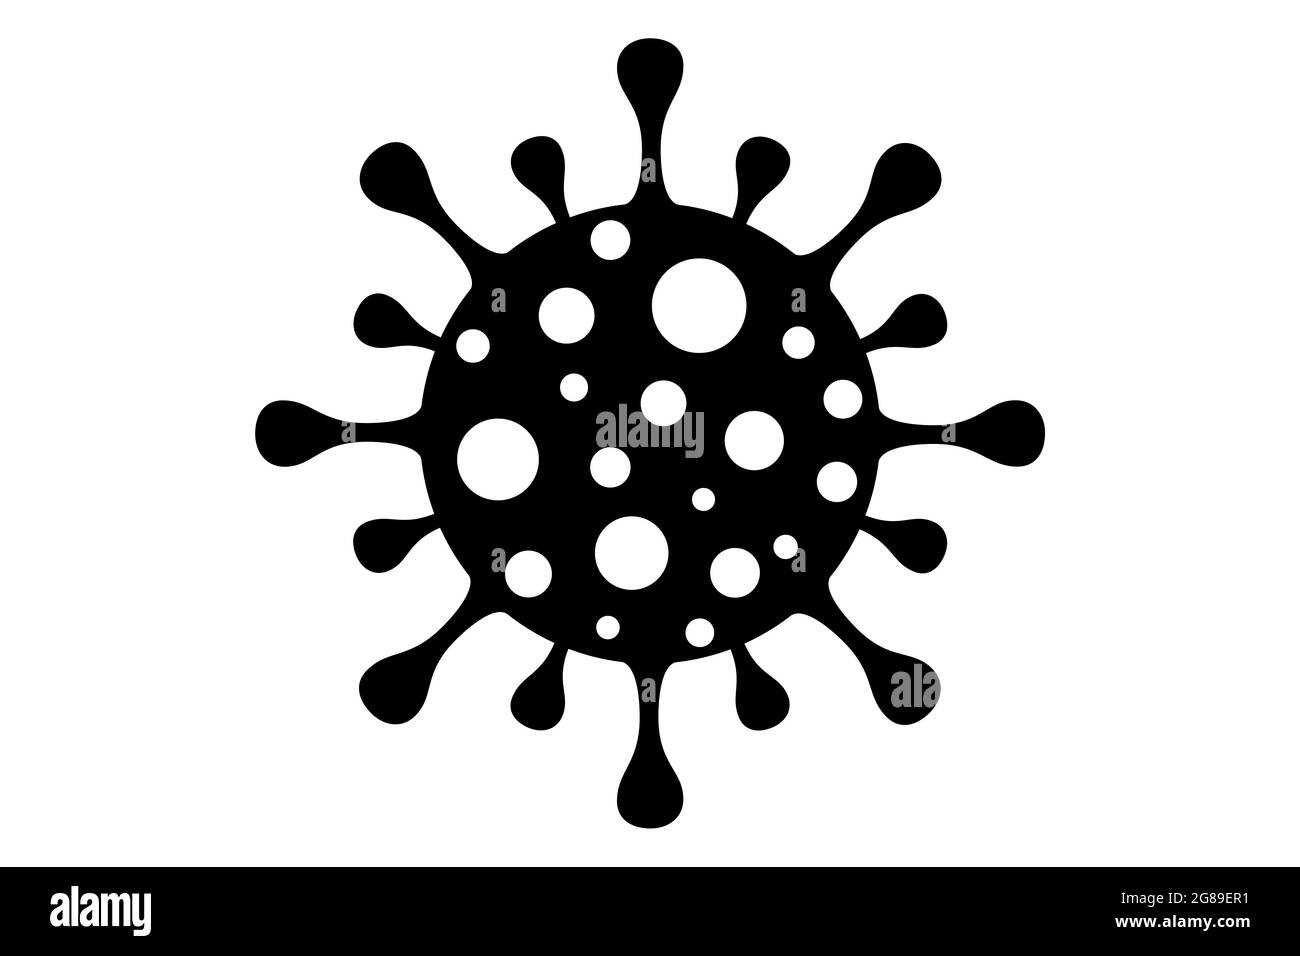 Coronavirus 2019-nCoV. Diseño de iconos del virus Corona. Negro sobre fondo blanco aislado. Infección por enfermedades respiratorias (brote de enfermedad). Pandemia de gripe. Foto de stock